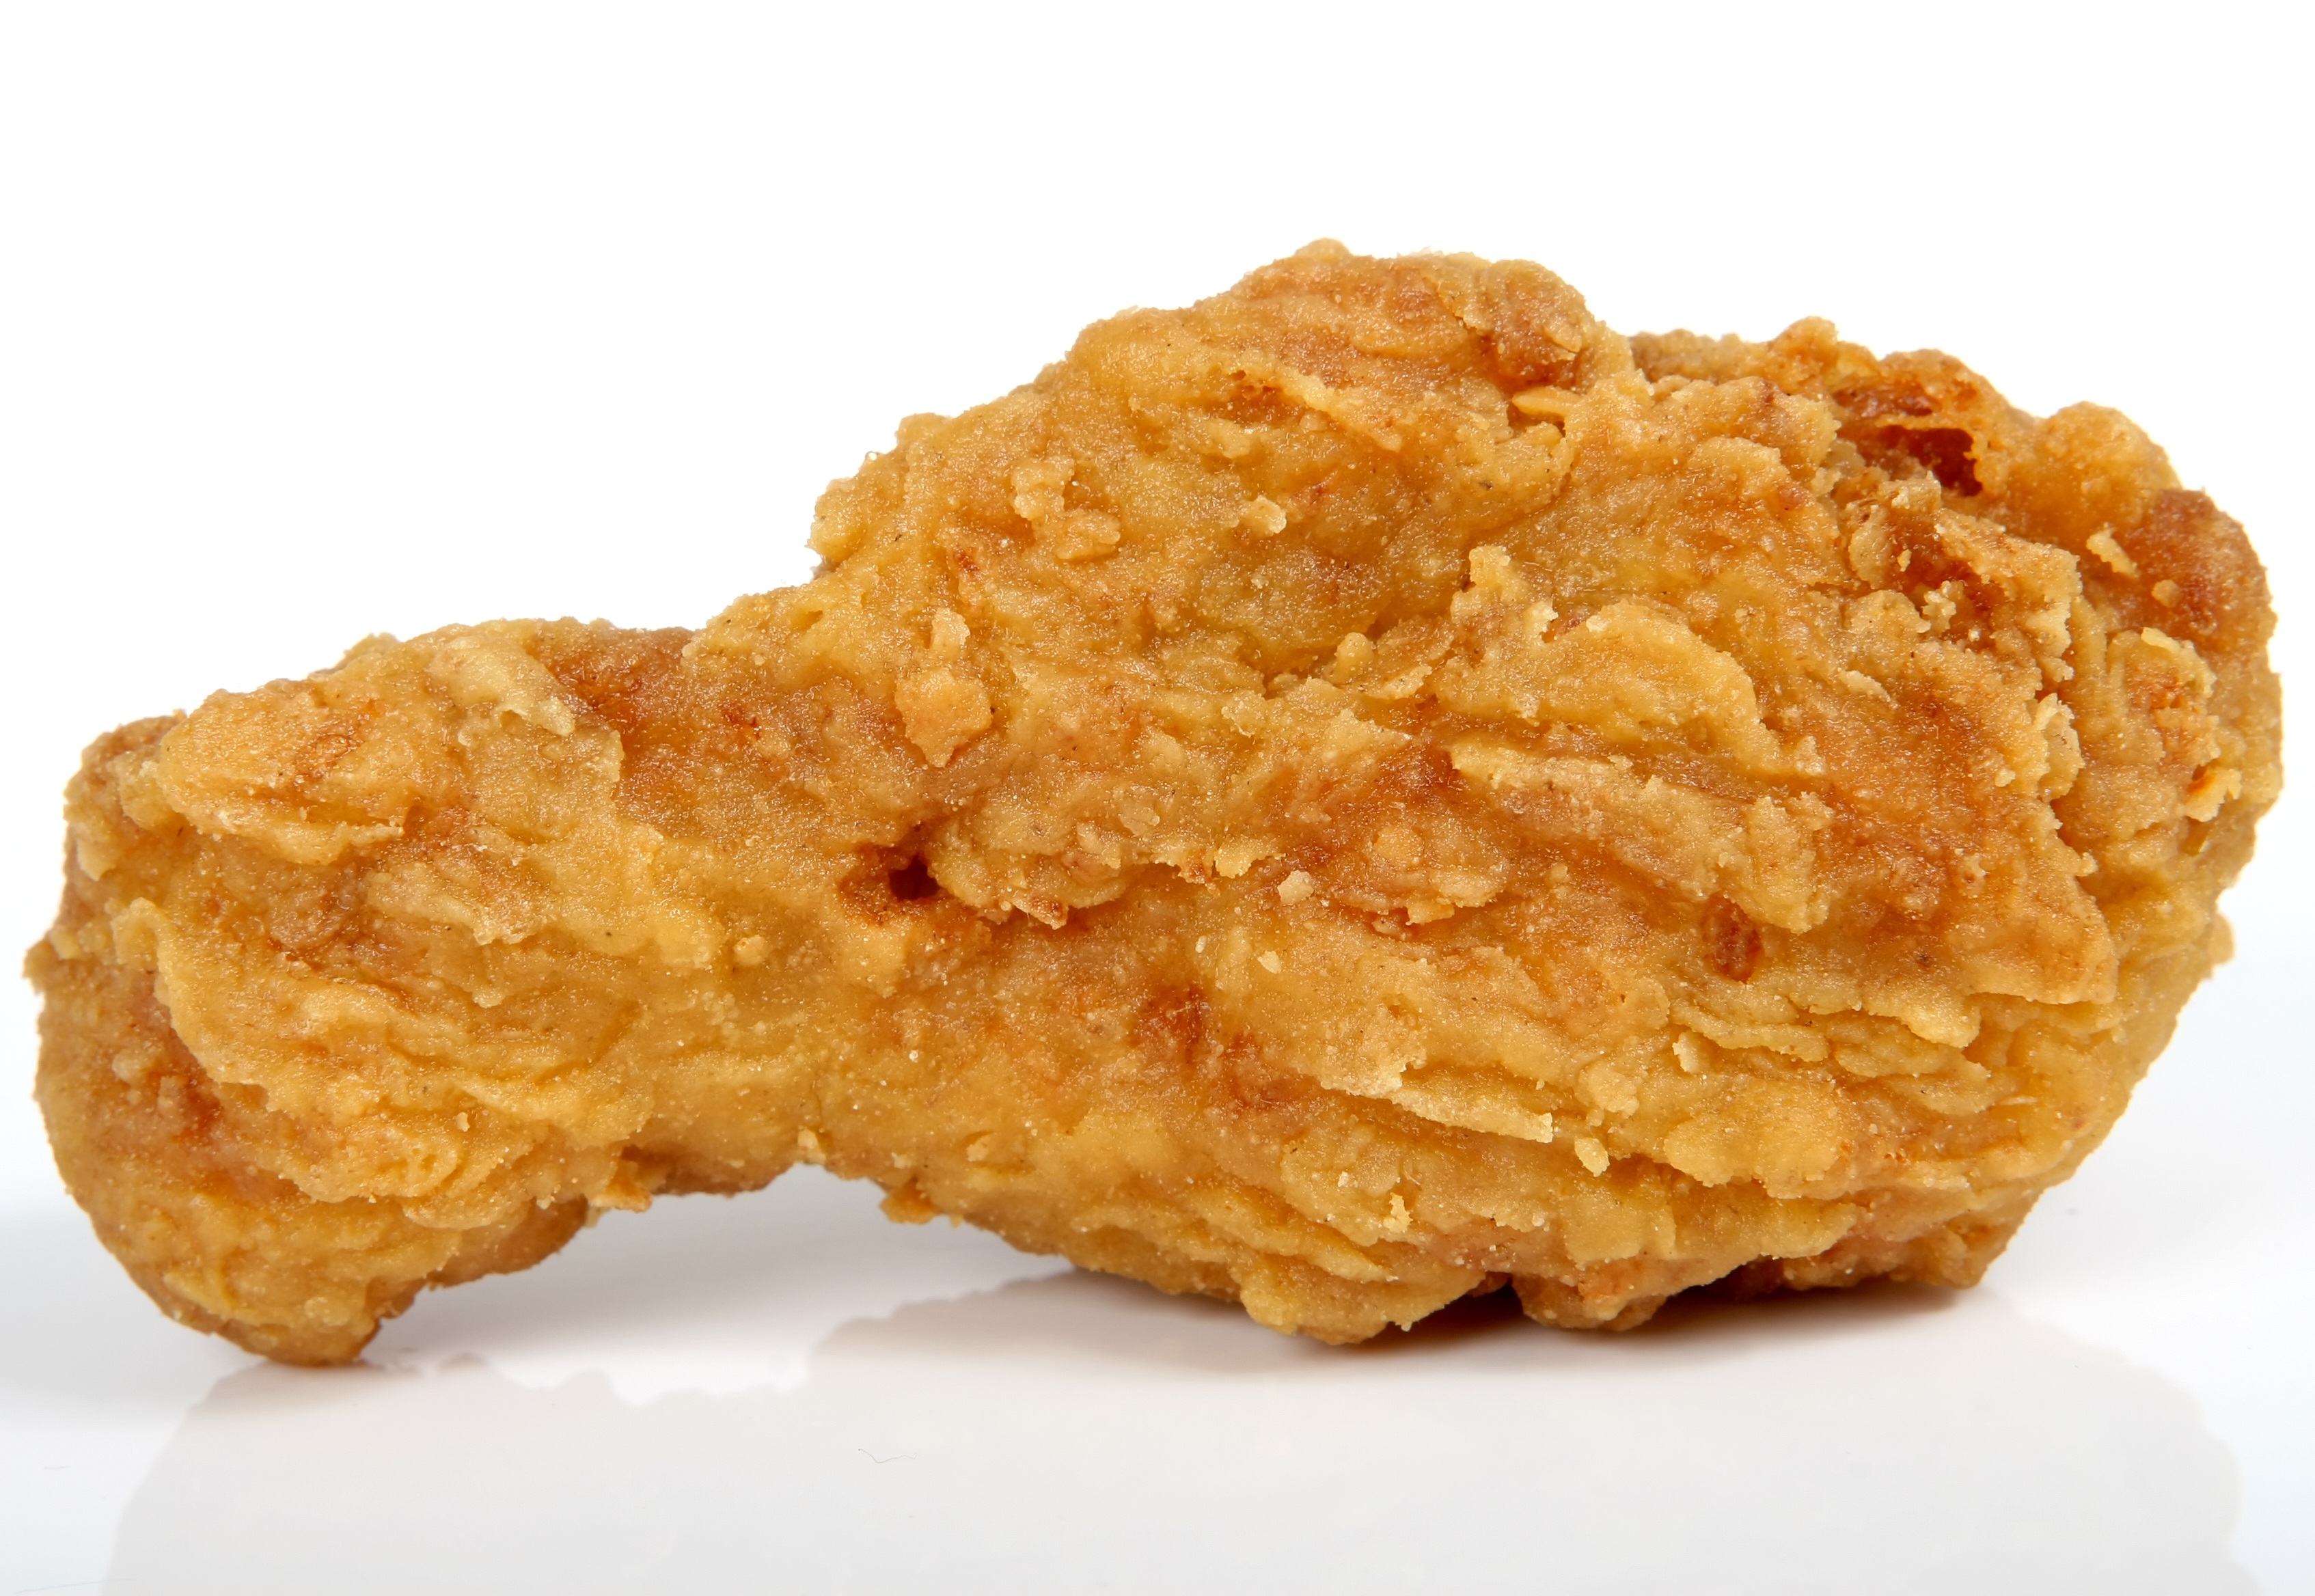 Fried chicken photo